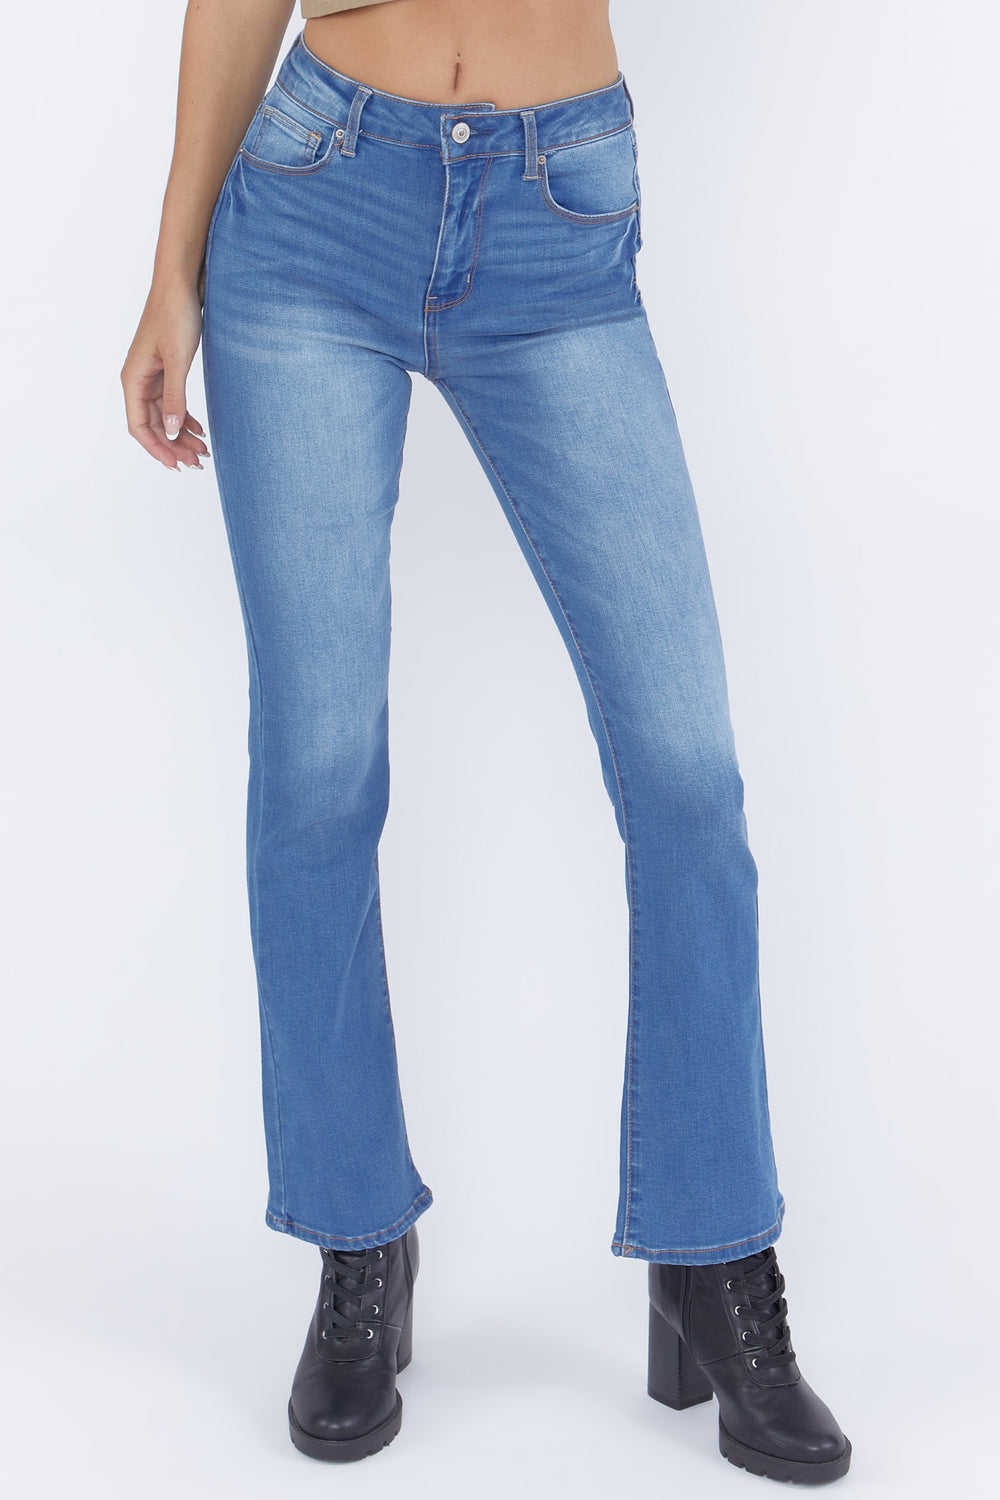 High-Rise Boot Cut Jeans Medium Blue